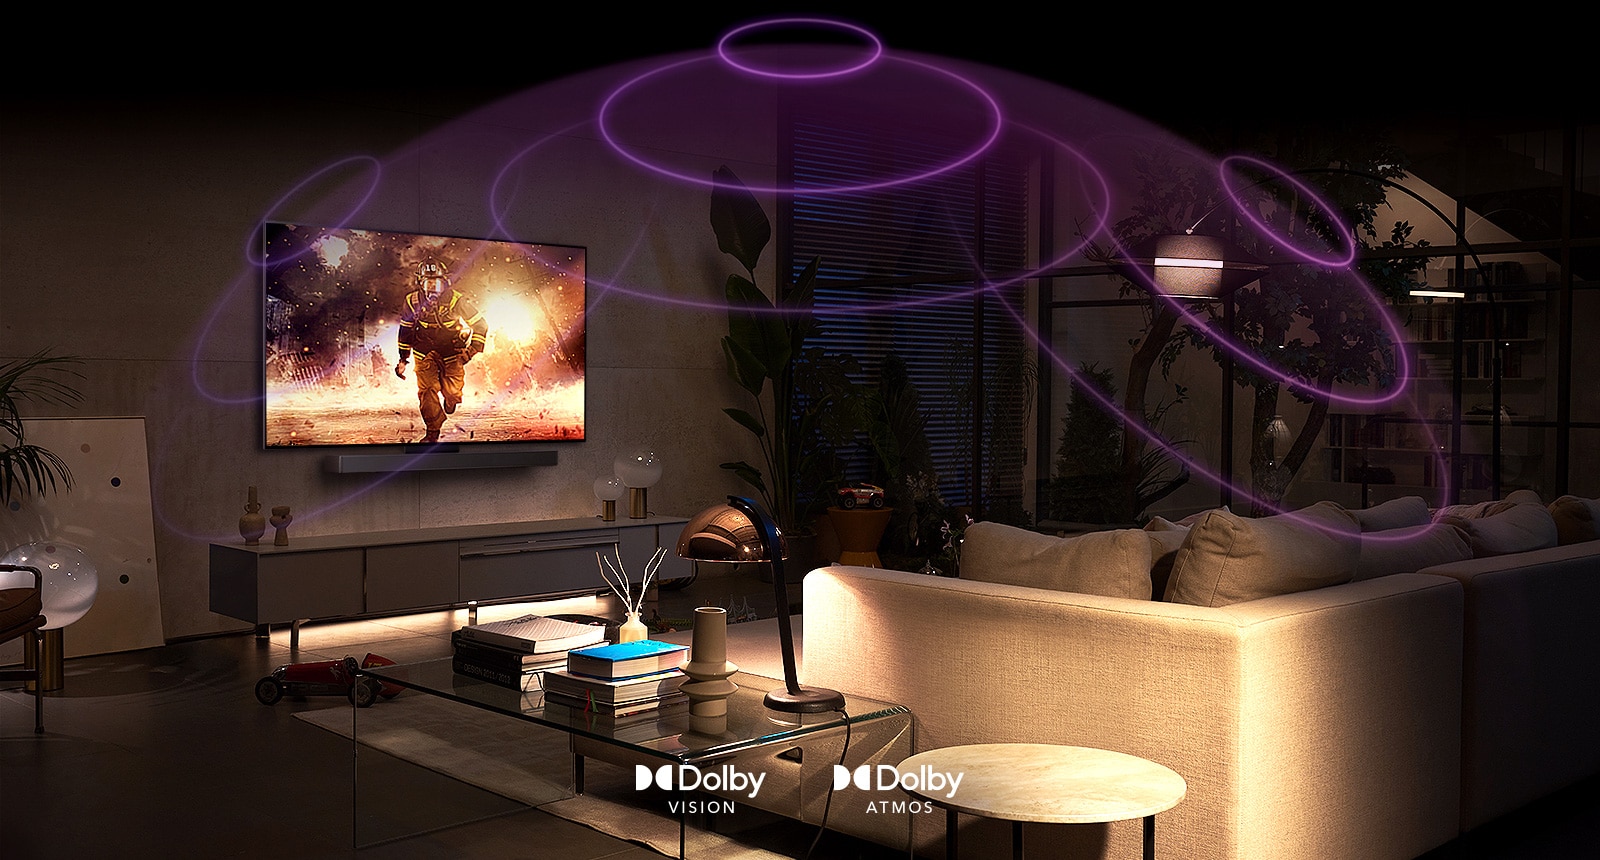 Зображення телевізора LG OLED у кімнаті із переглядом бойовика.  Звукові хвилі створюють купол між диваном і телевізором, відображаючи комплексний насичений звук.